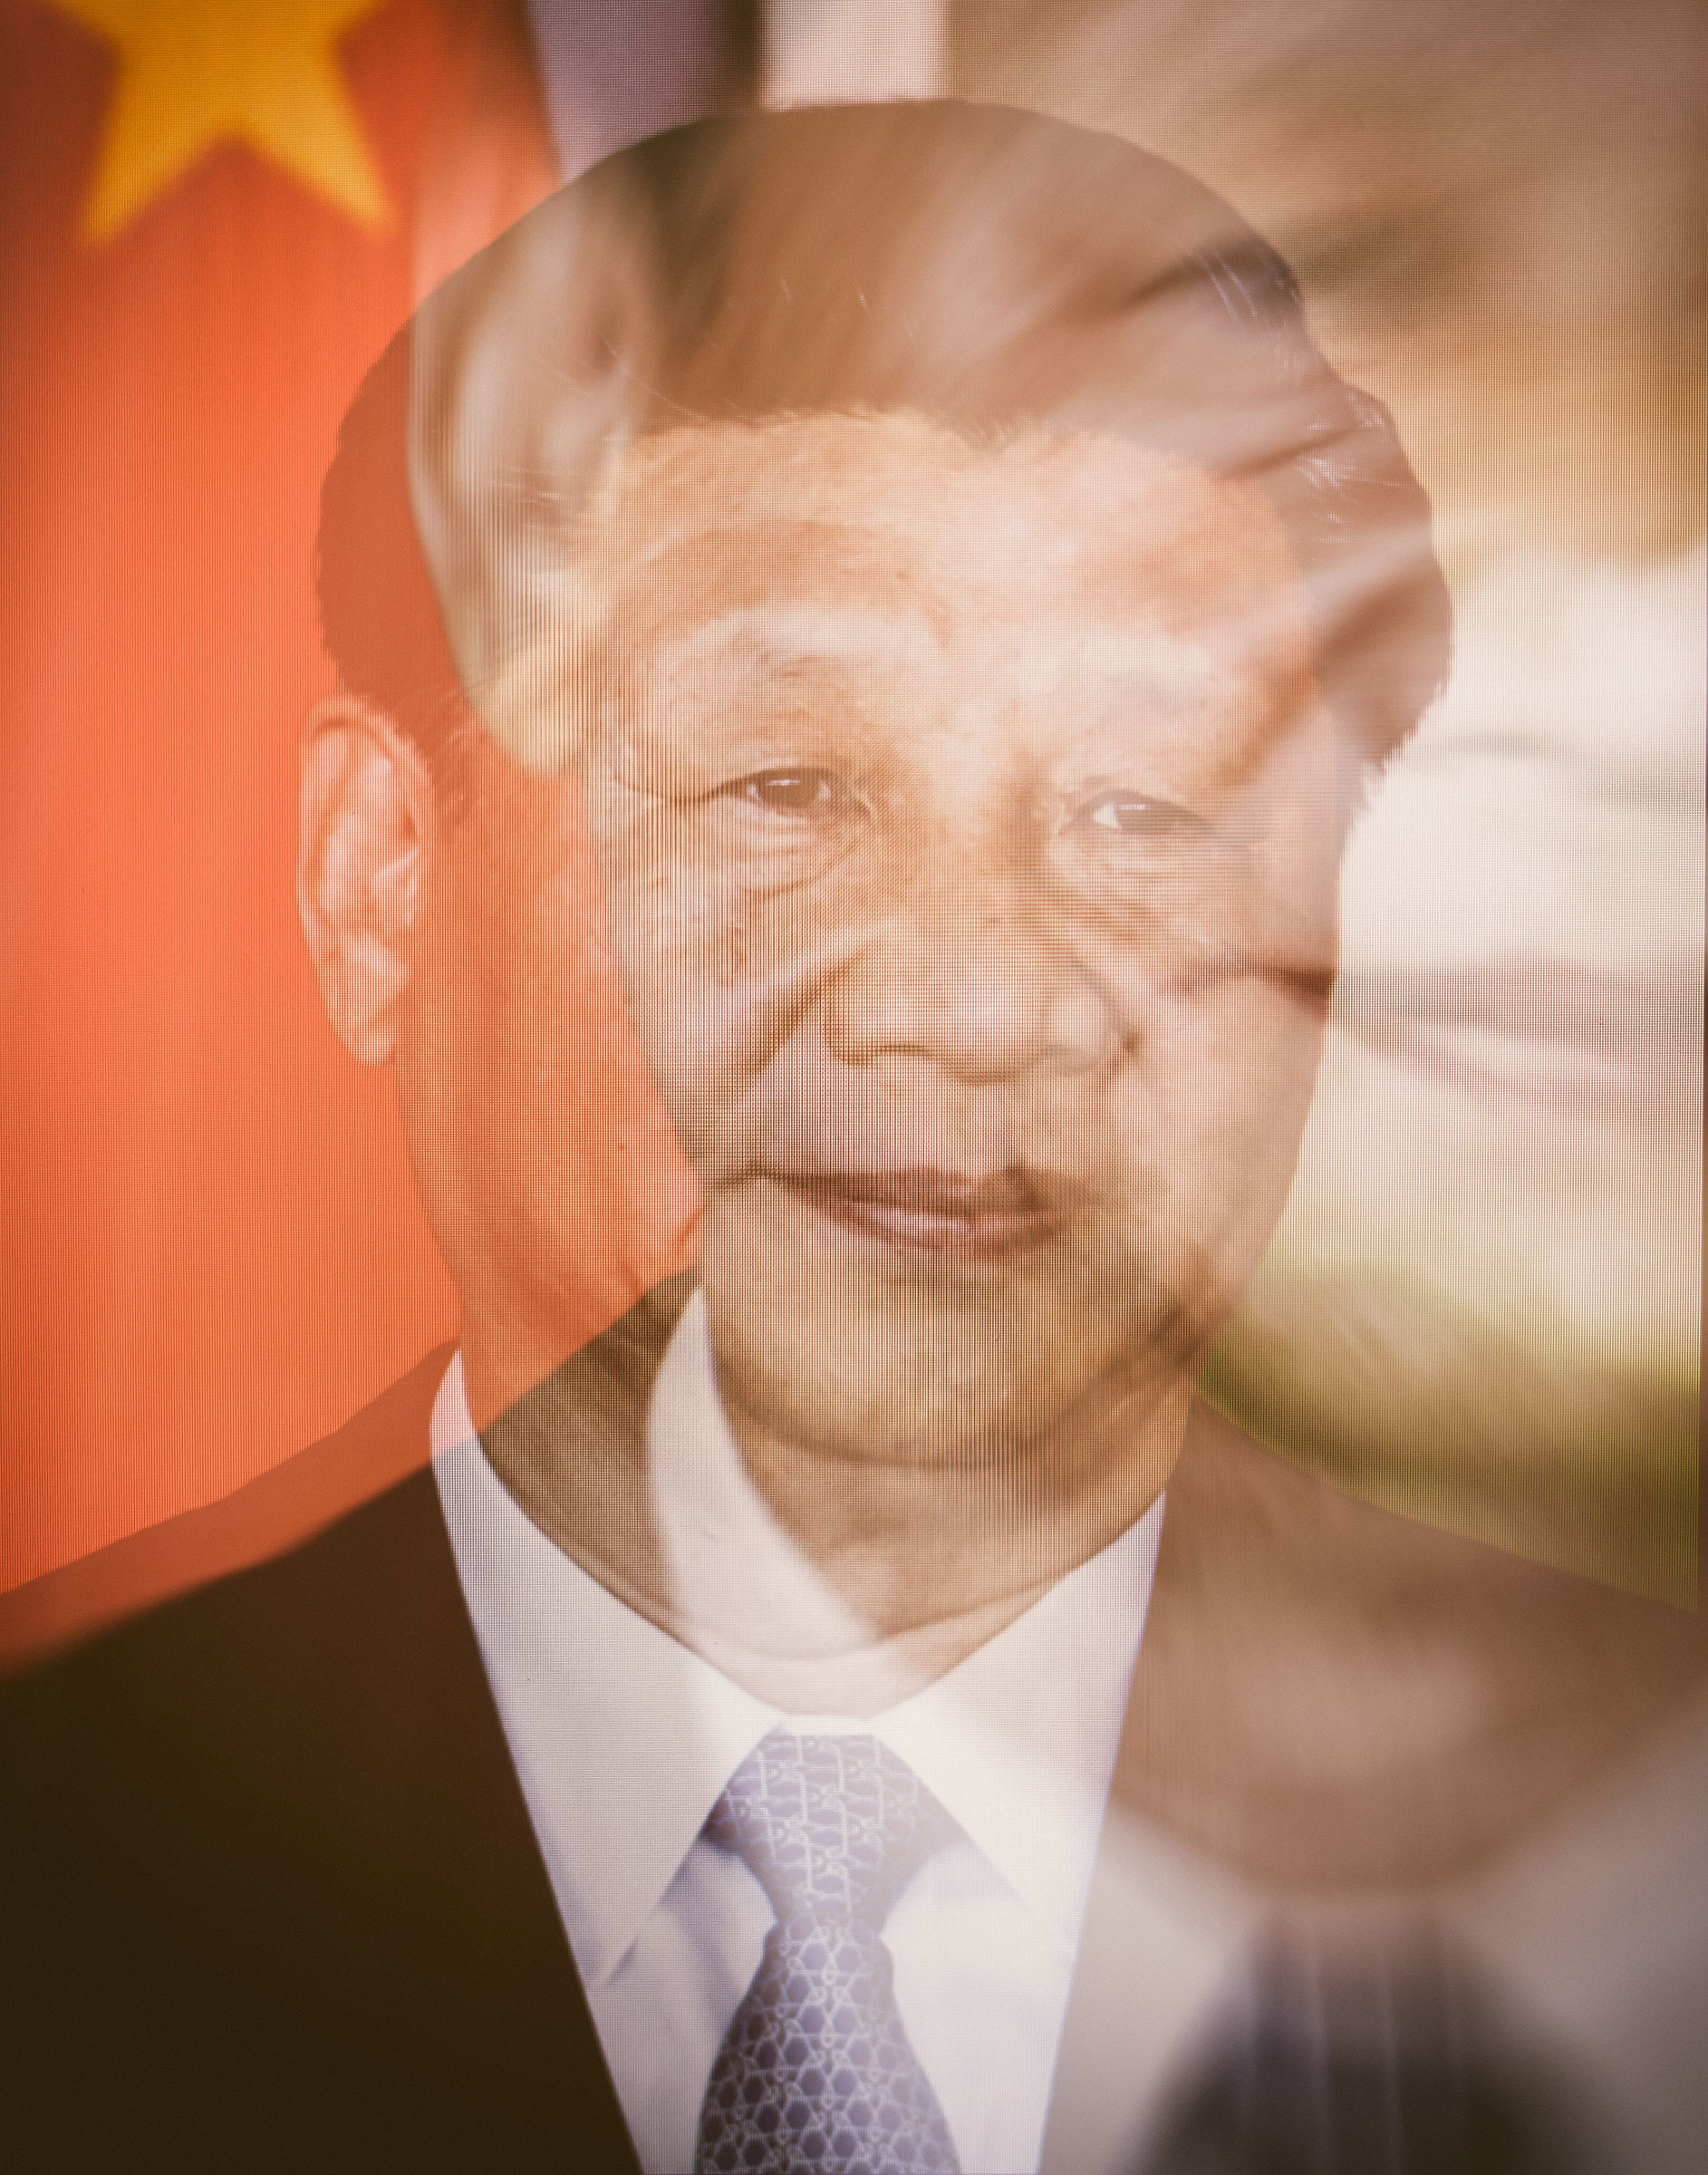 TIME 100 2022: Xi Jinping